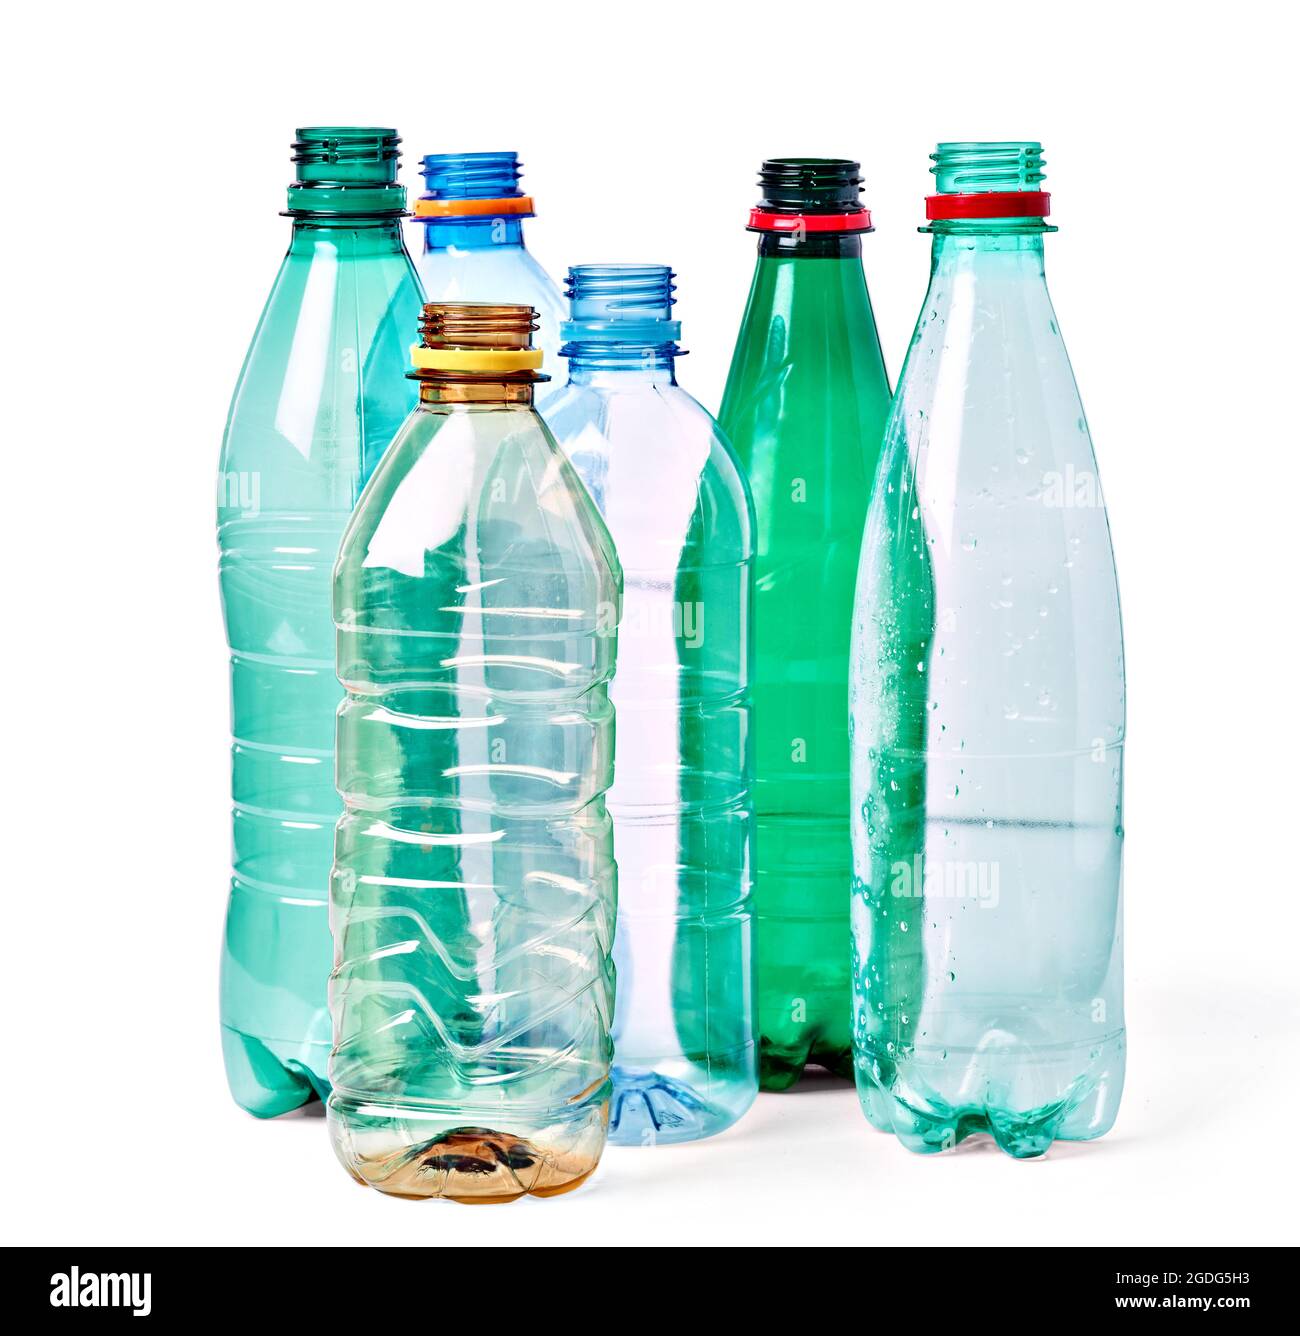 La botella de plástico: de recipiente milagroso a residuo odiado